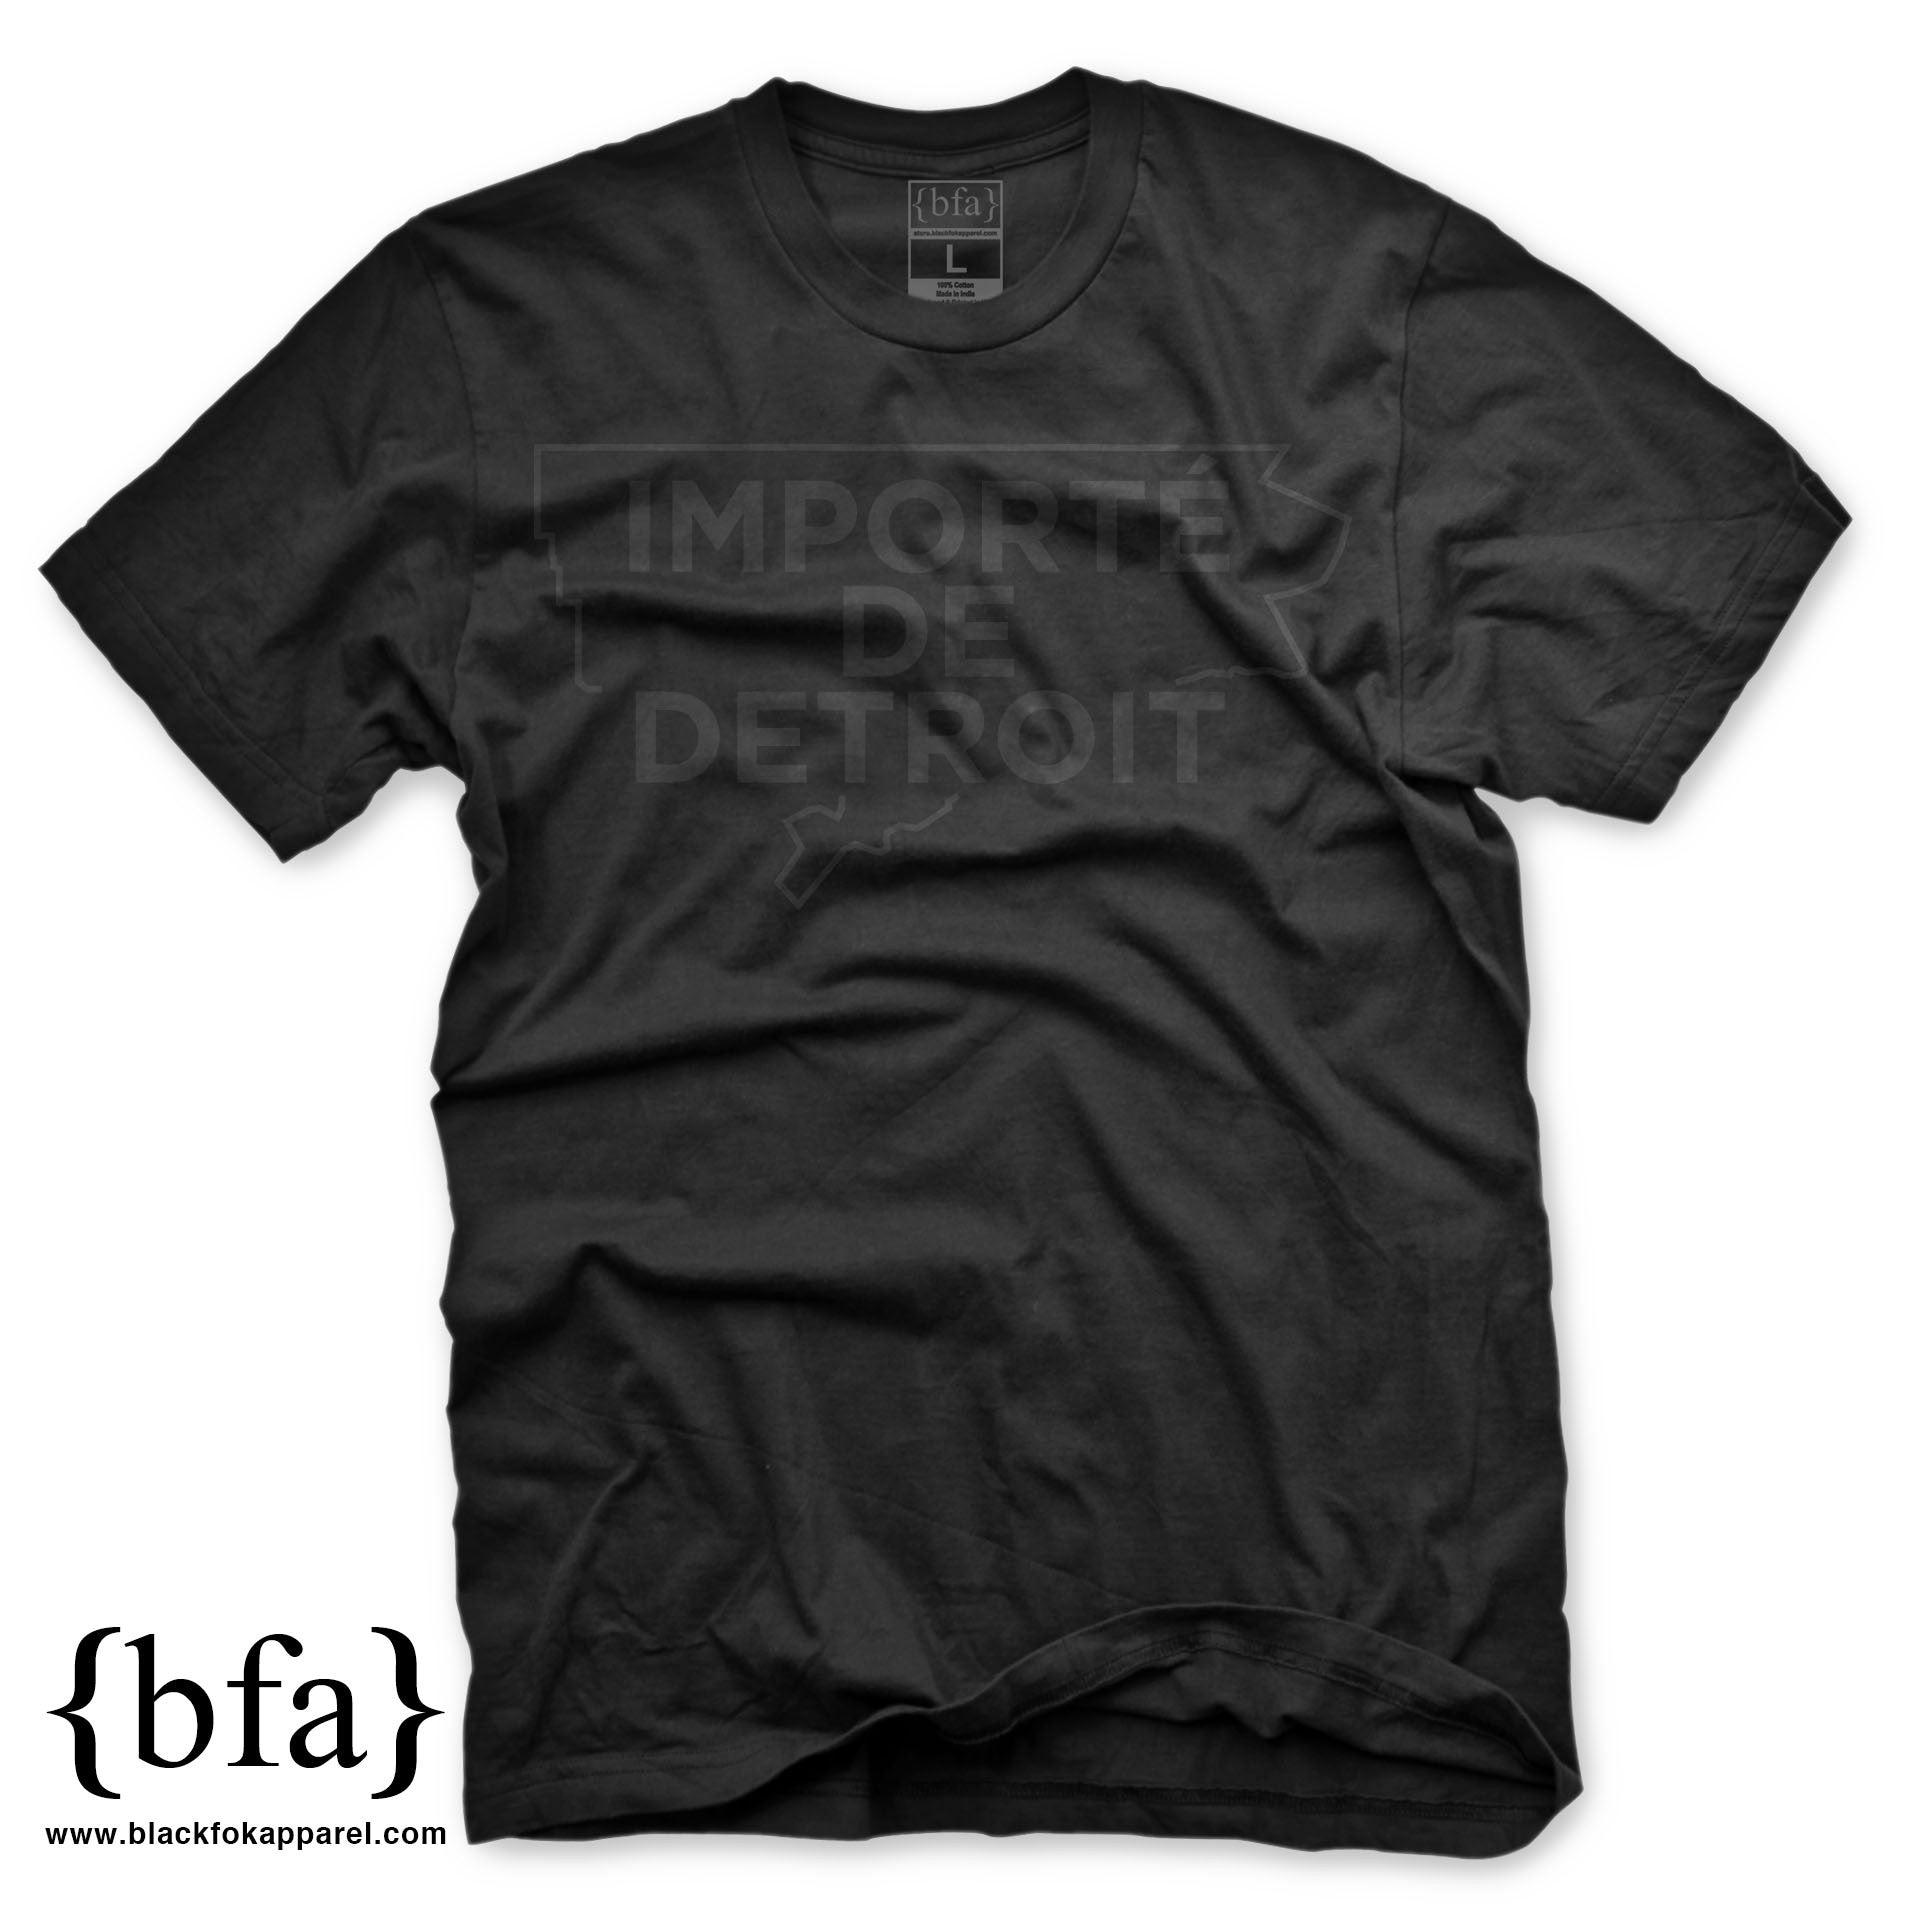 Importe de Detroit T-Shirt Black on Black